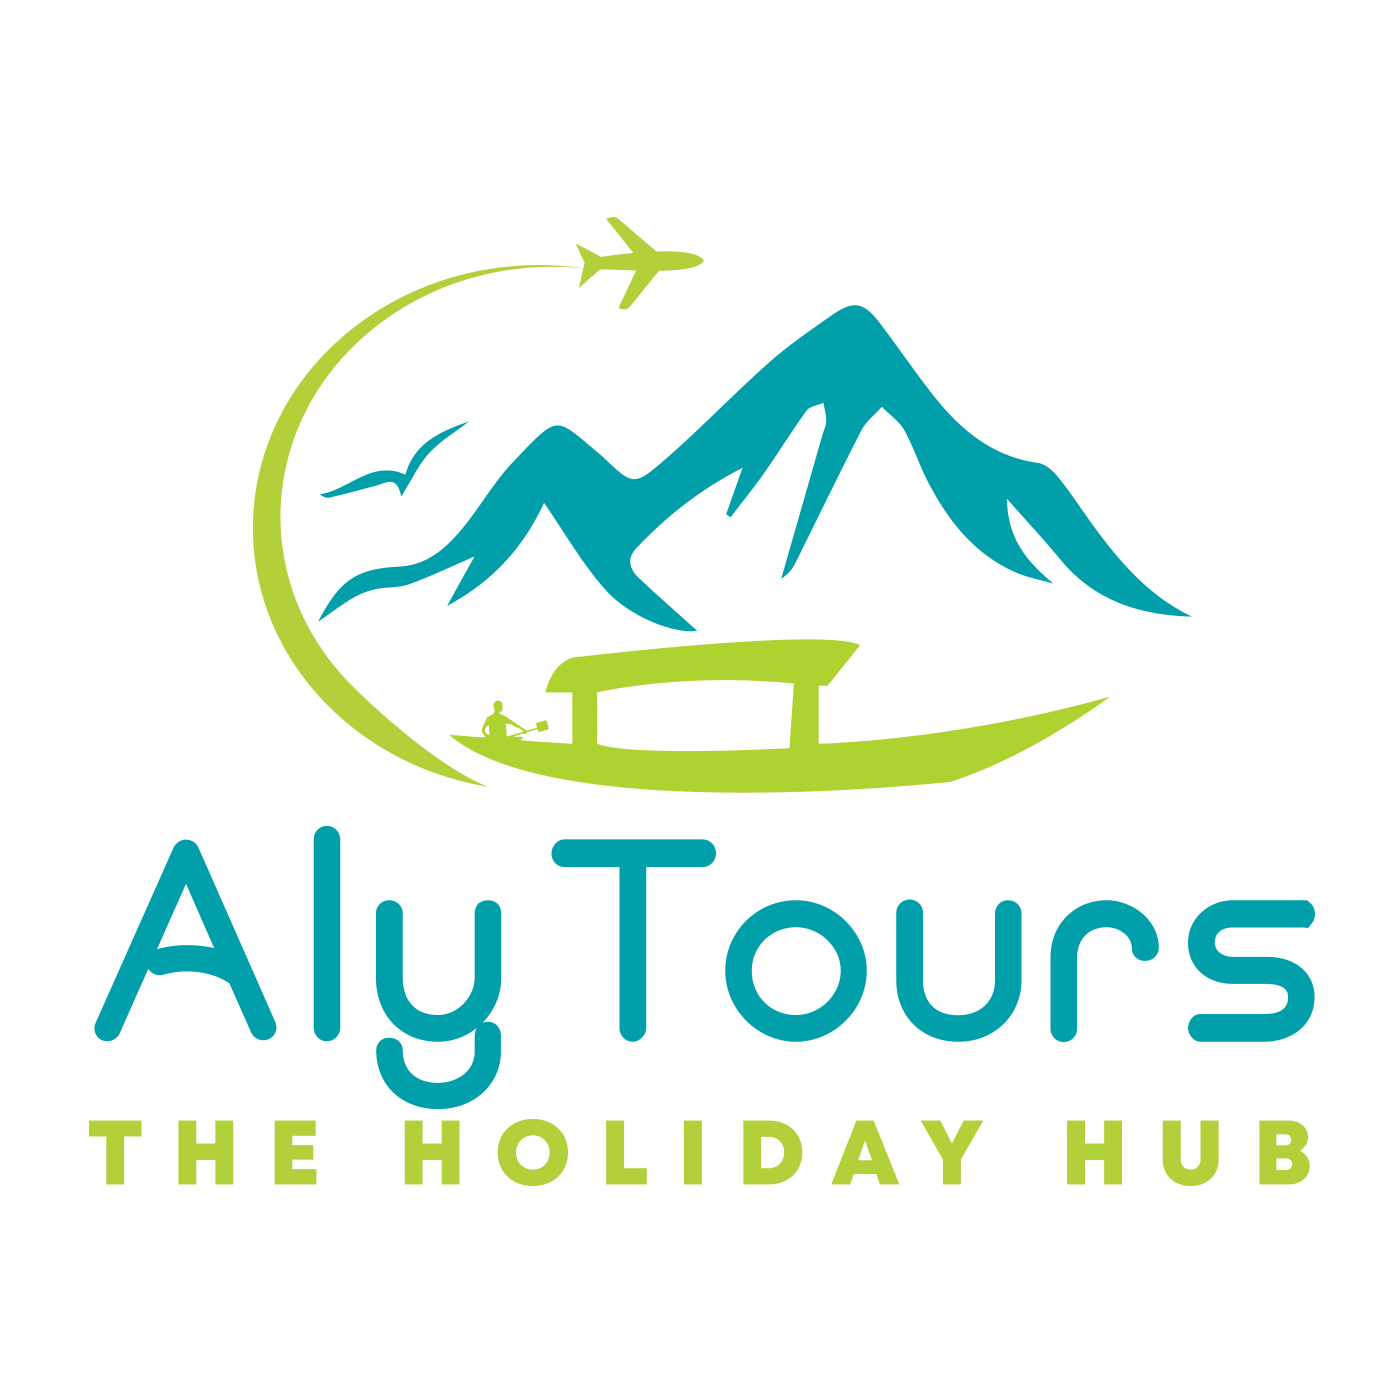 Aly Tours